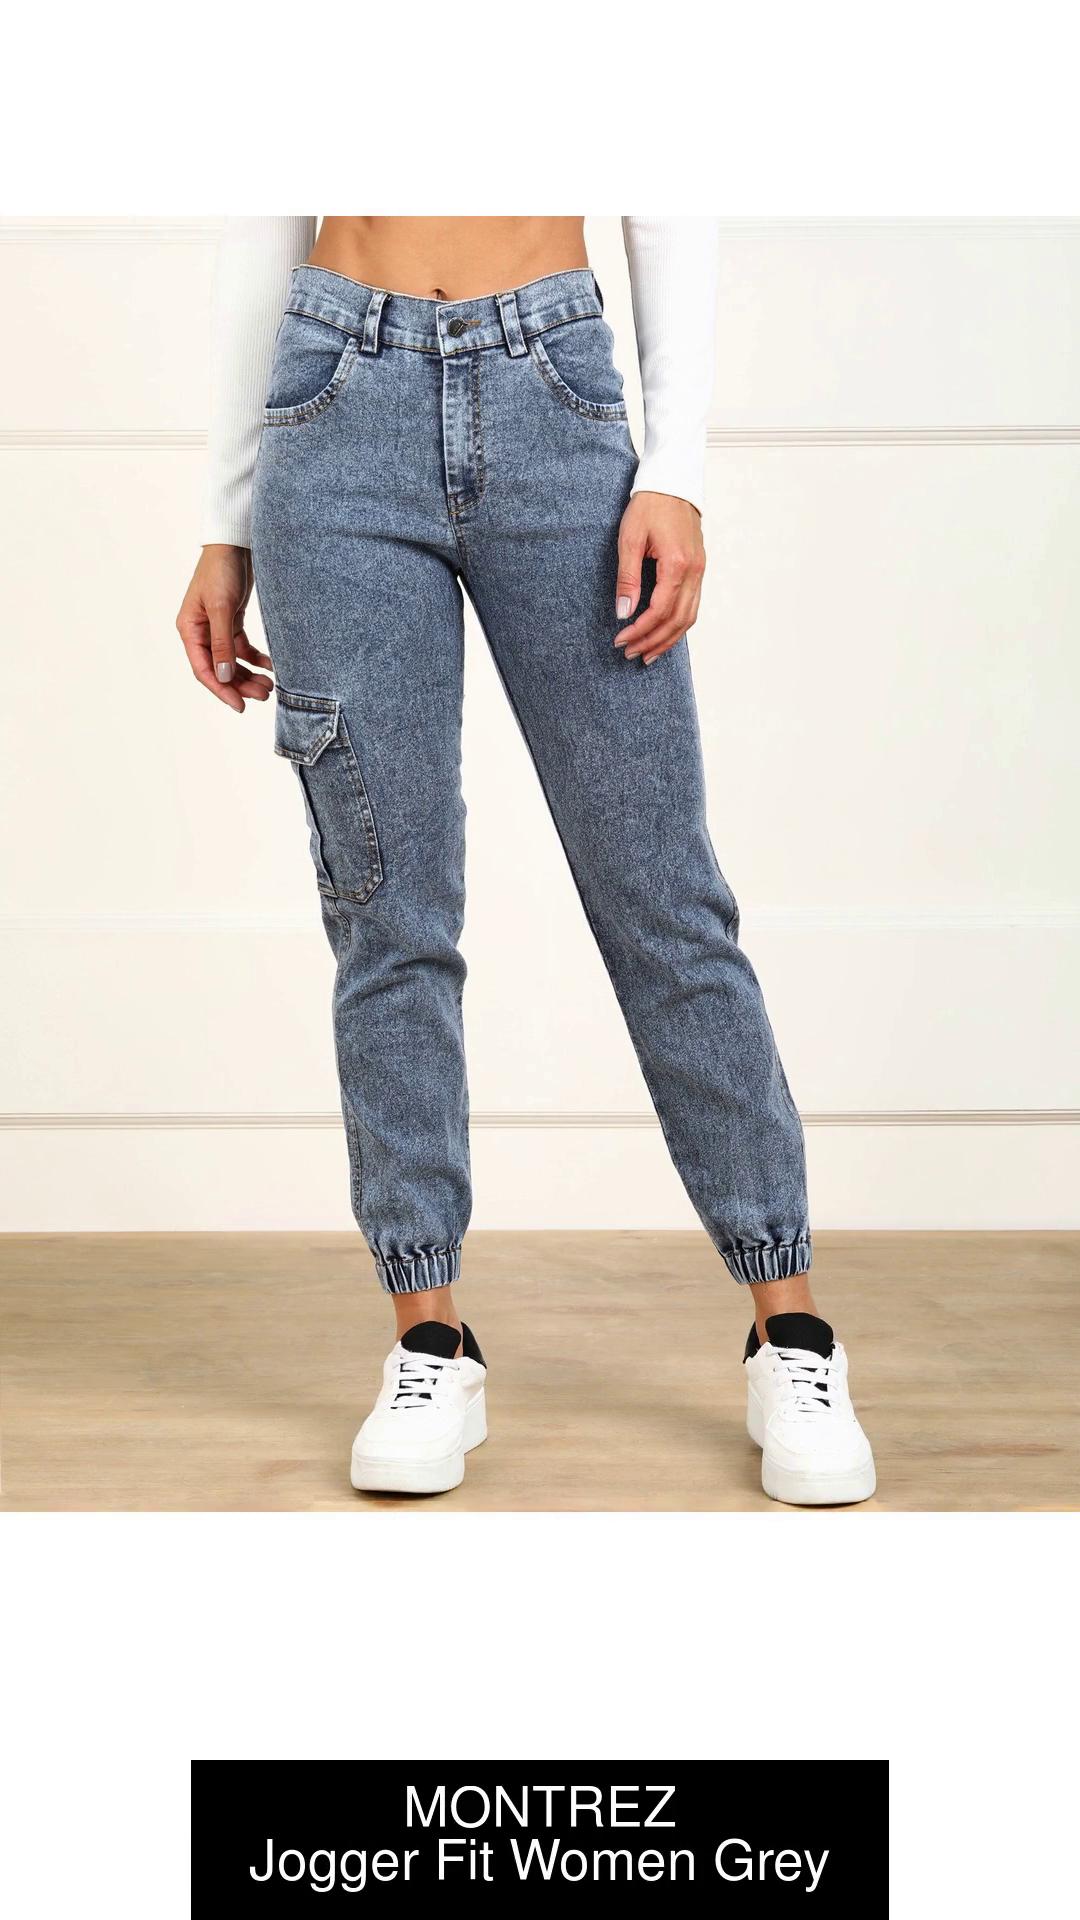 MONTREZ Jogger Fit Women Grey Jeans